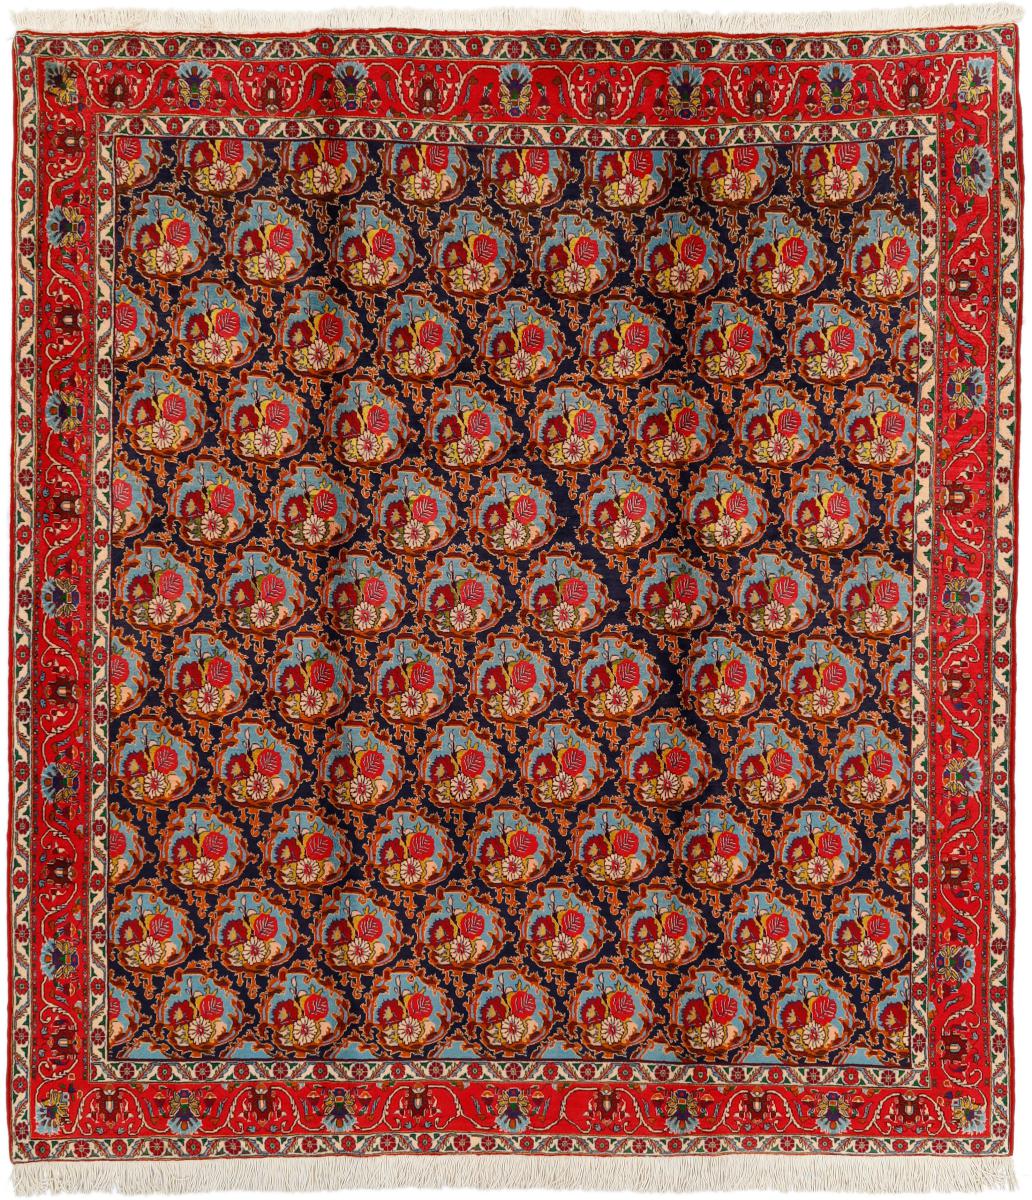  ペルシャ絨毯 センネ 9'4"x8'3" 9'4"x8'3",  ペルシャ絨毯 手織り